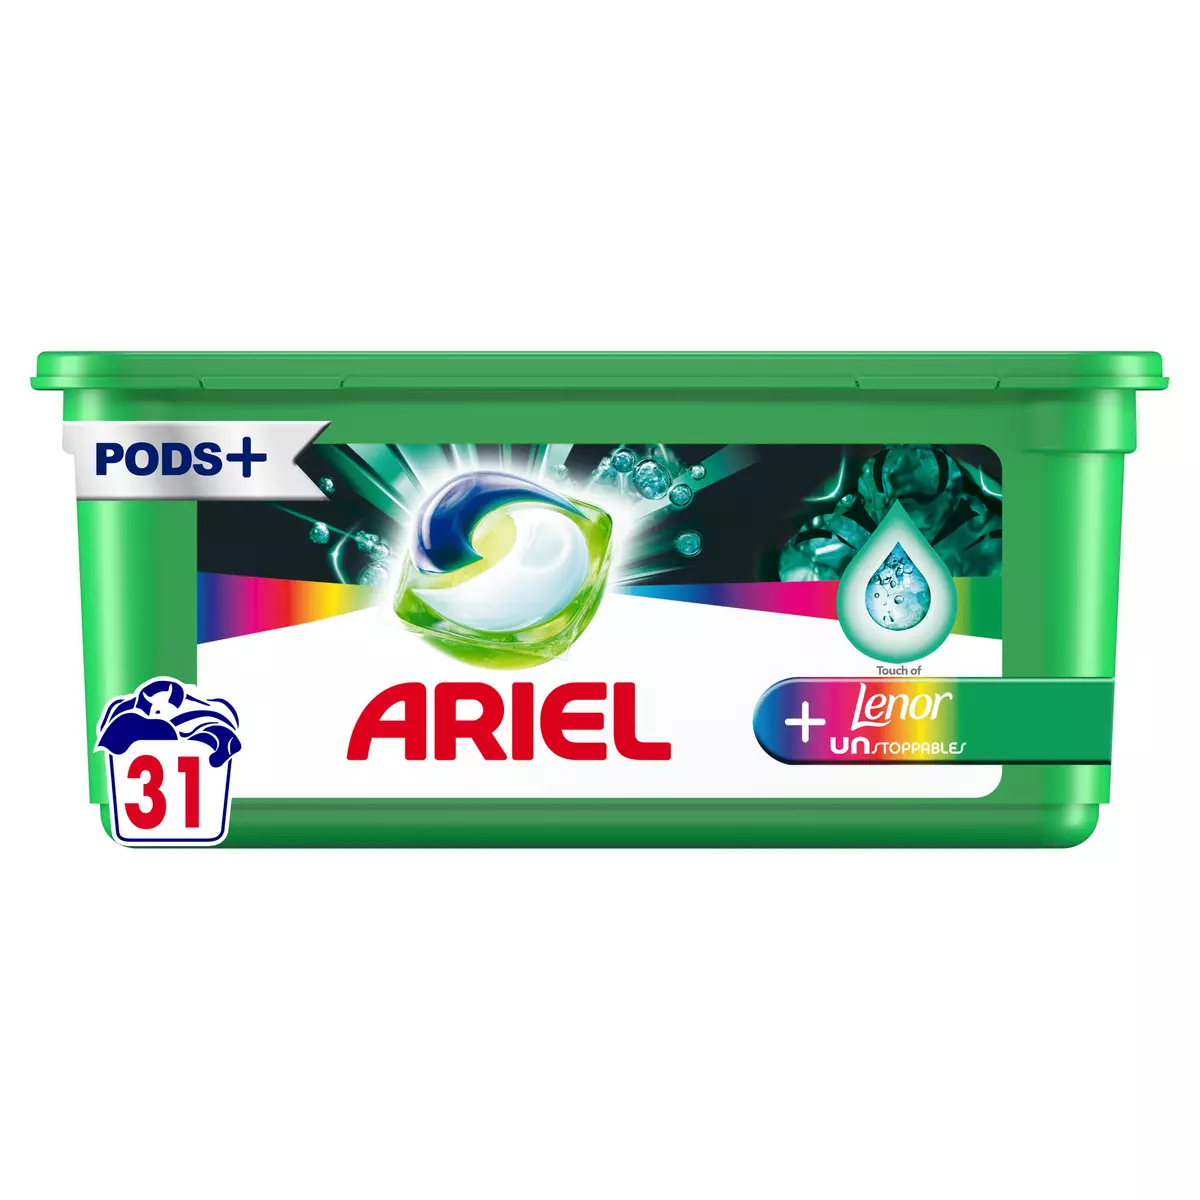 Ariel All-in-1 Pods Lessive Capsules, 50 Lavages, Original, Efficace même à  Froid et Fraîcheur Durable